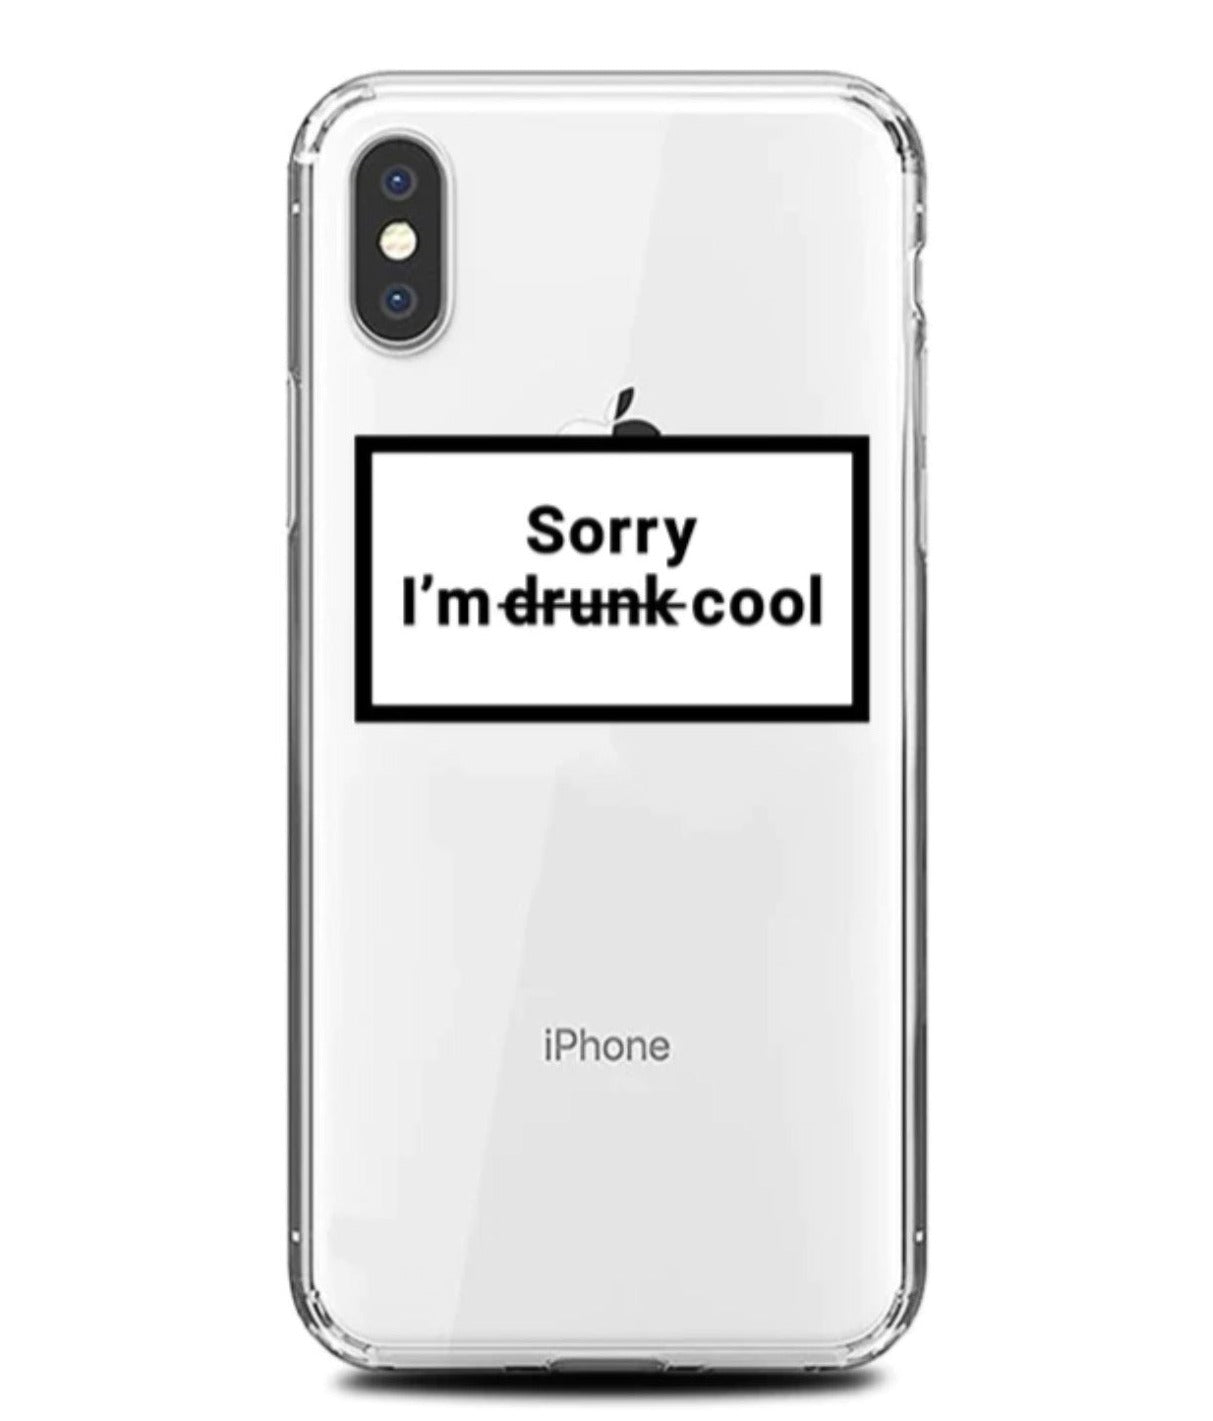 " sorry i'm d̶r̶u̶n̶k̶ cool" case